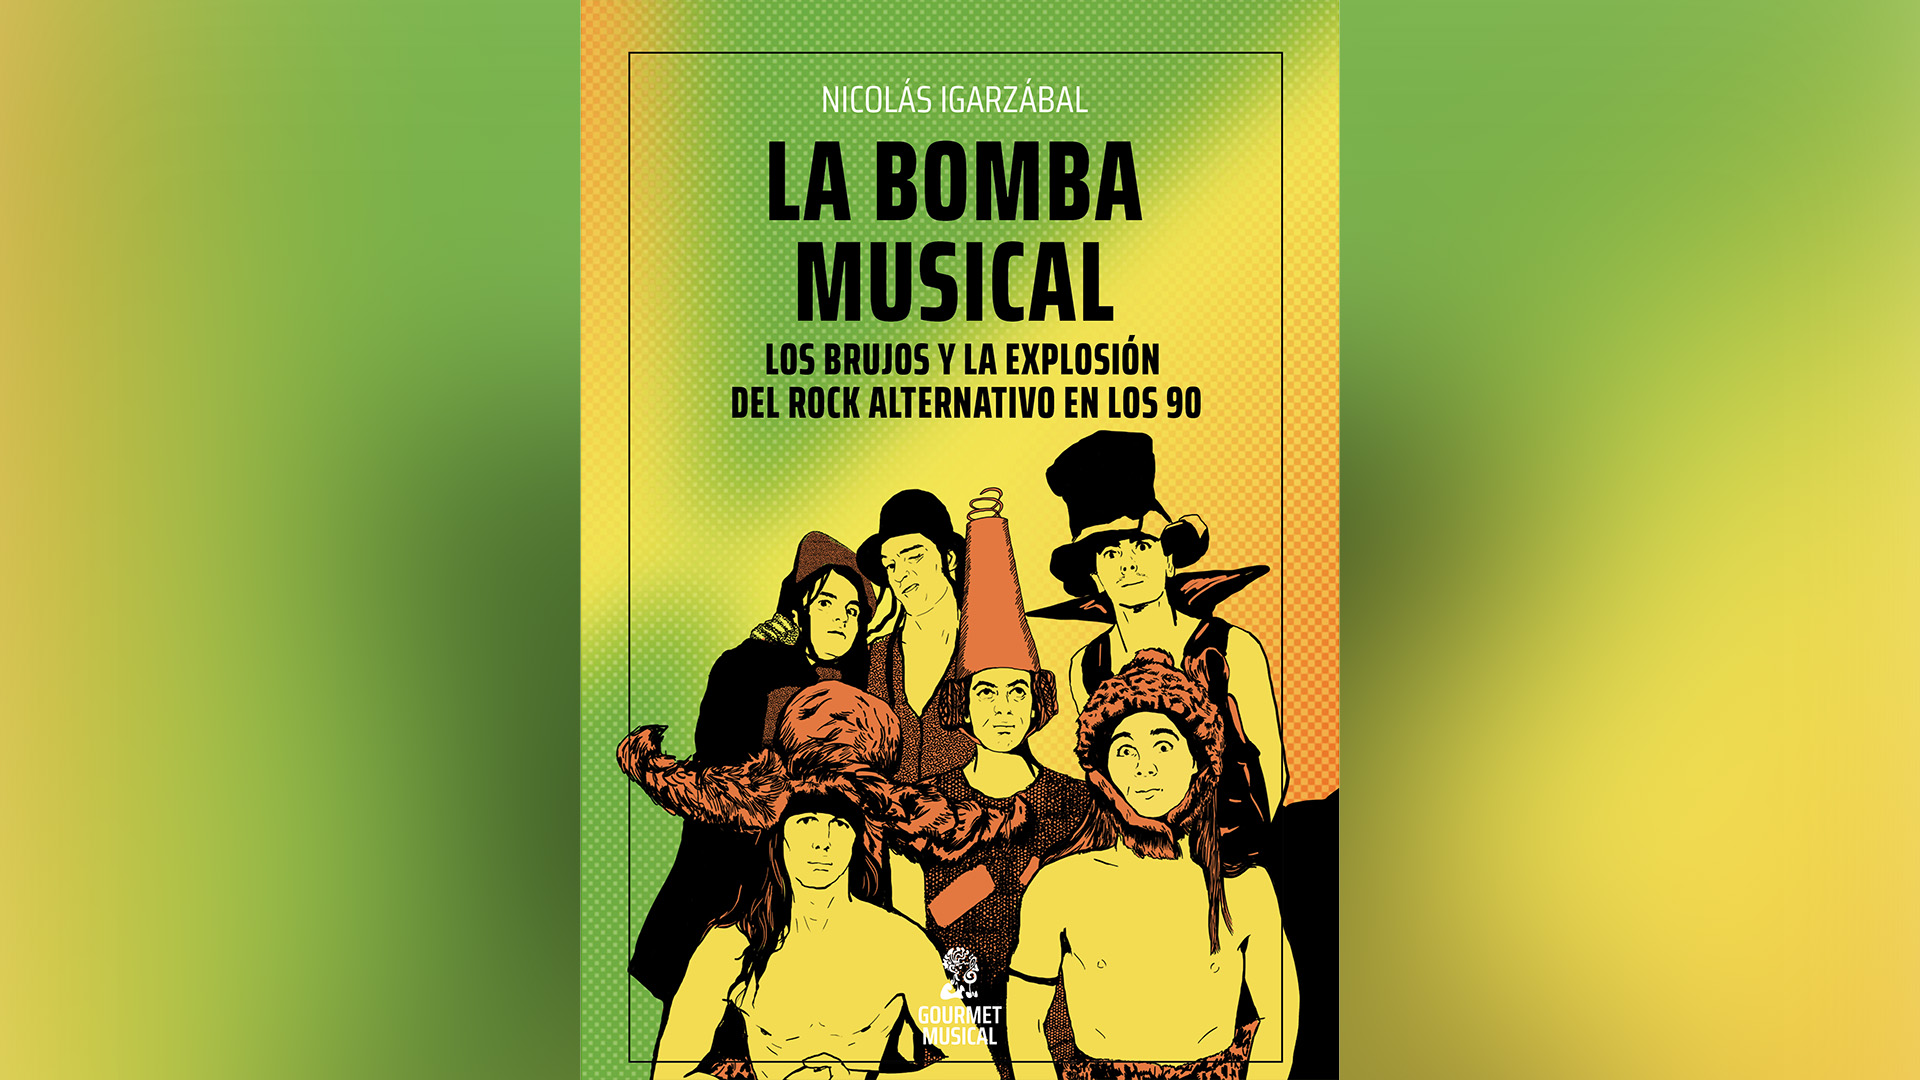 Portada de "La bomba musical", de Nicolás Igarzábal, editado por Gourmet musical.